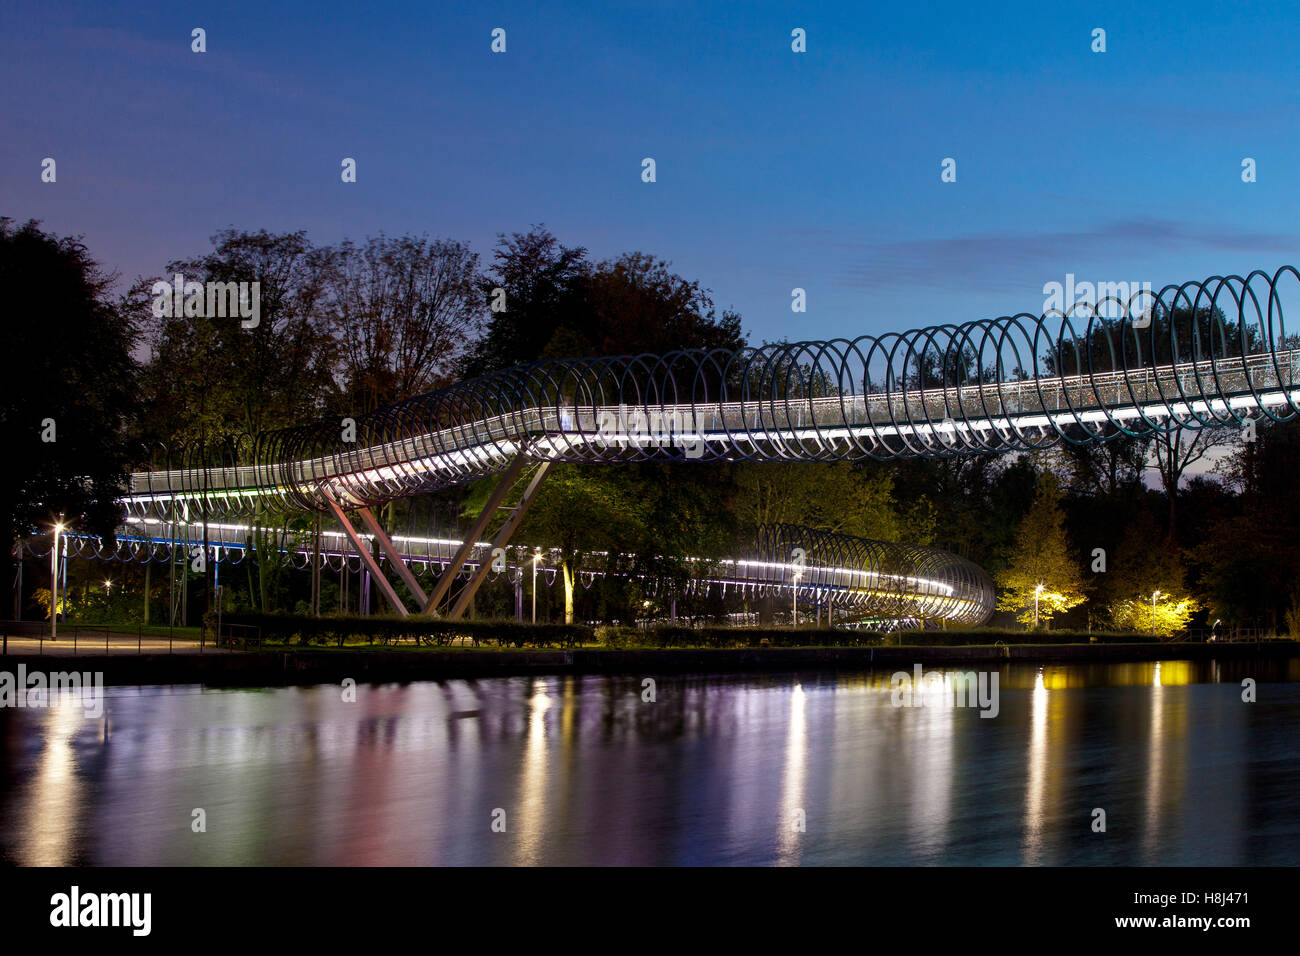 Allemagne, Oberhausen, pont piétonnier éclairé Slinky ressorts pour Fame également nommé pont canal Rhein-Herne Rehberger Banque D'Images